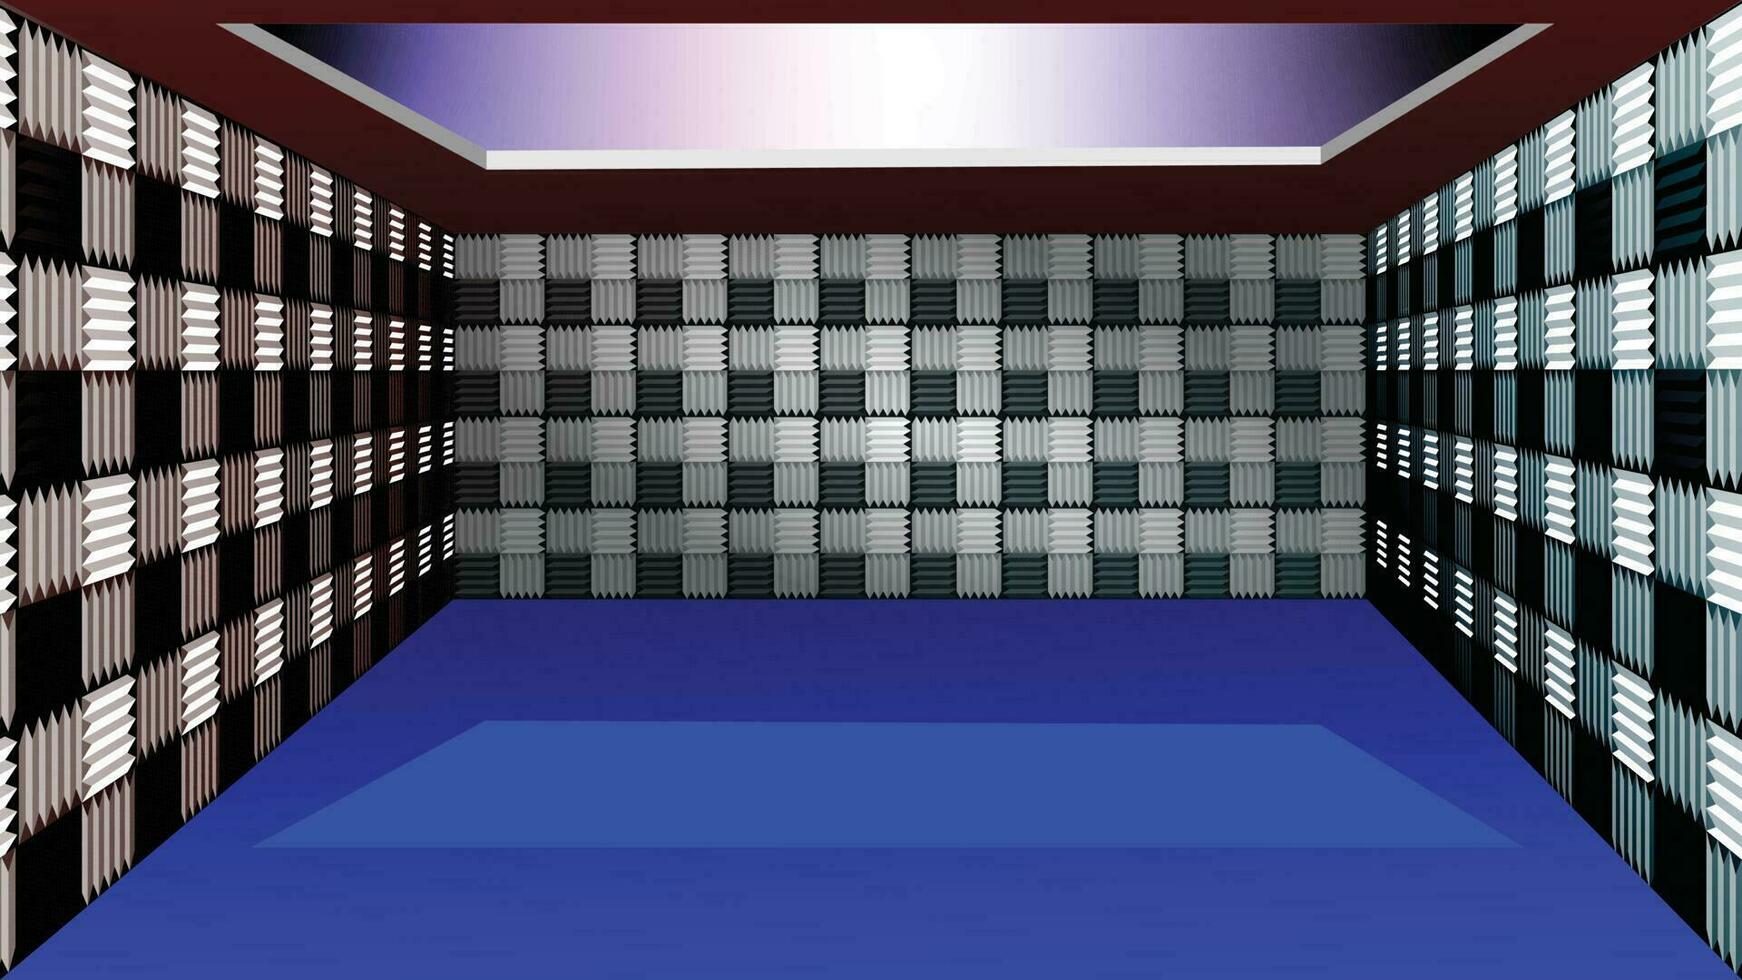 studio inspelning rum illustration med ljudisolering vägg. 3d virtuell djup perspektiv. tömma inspelning rum med ljud minska textur vektor